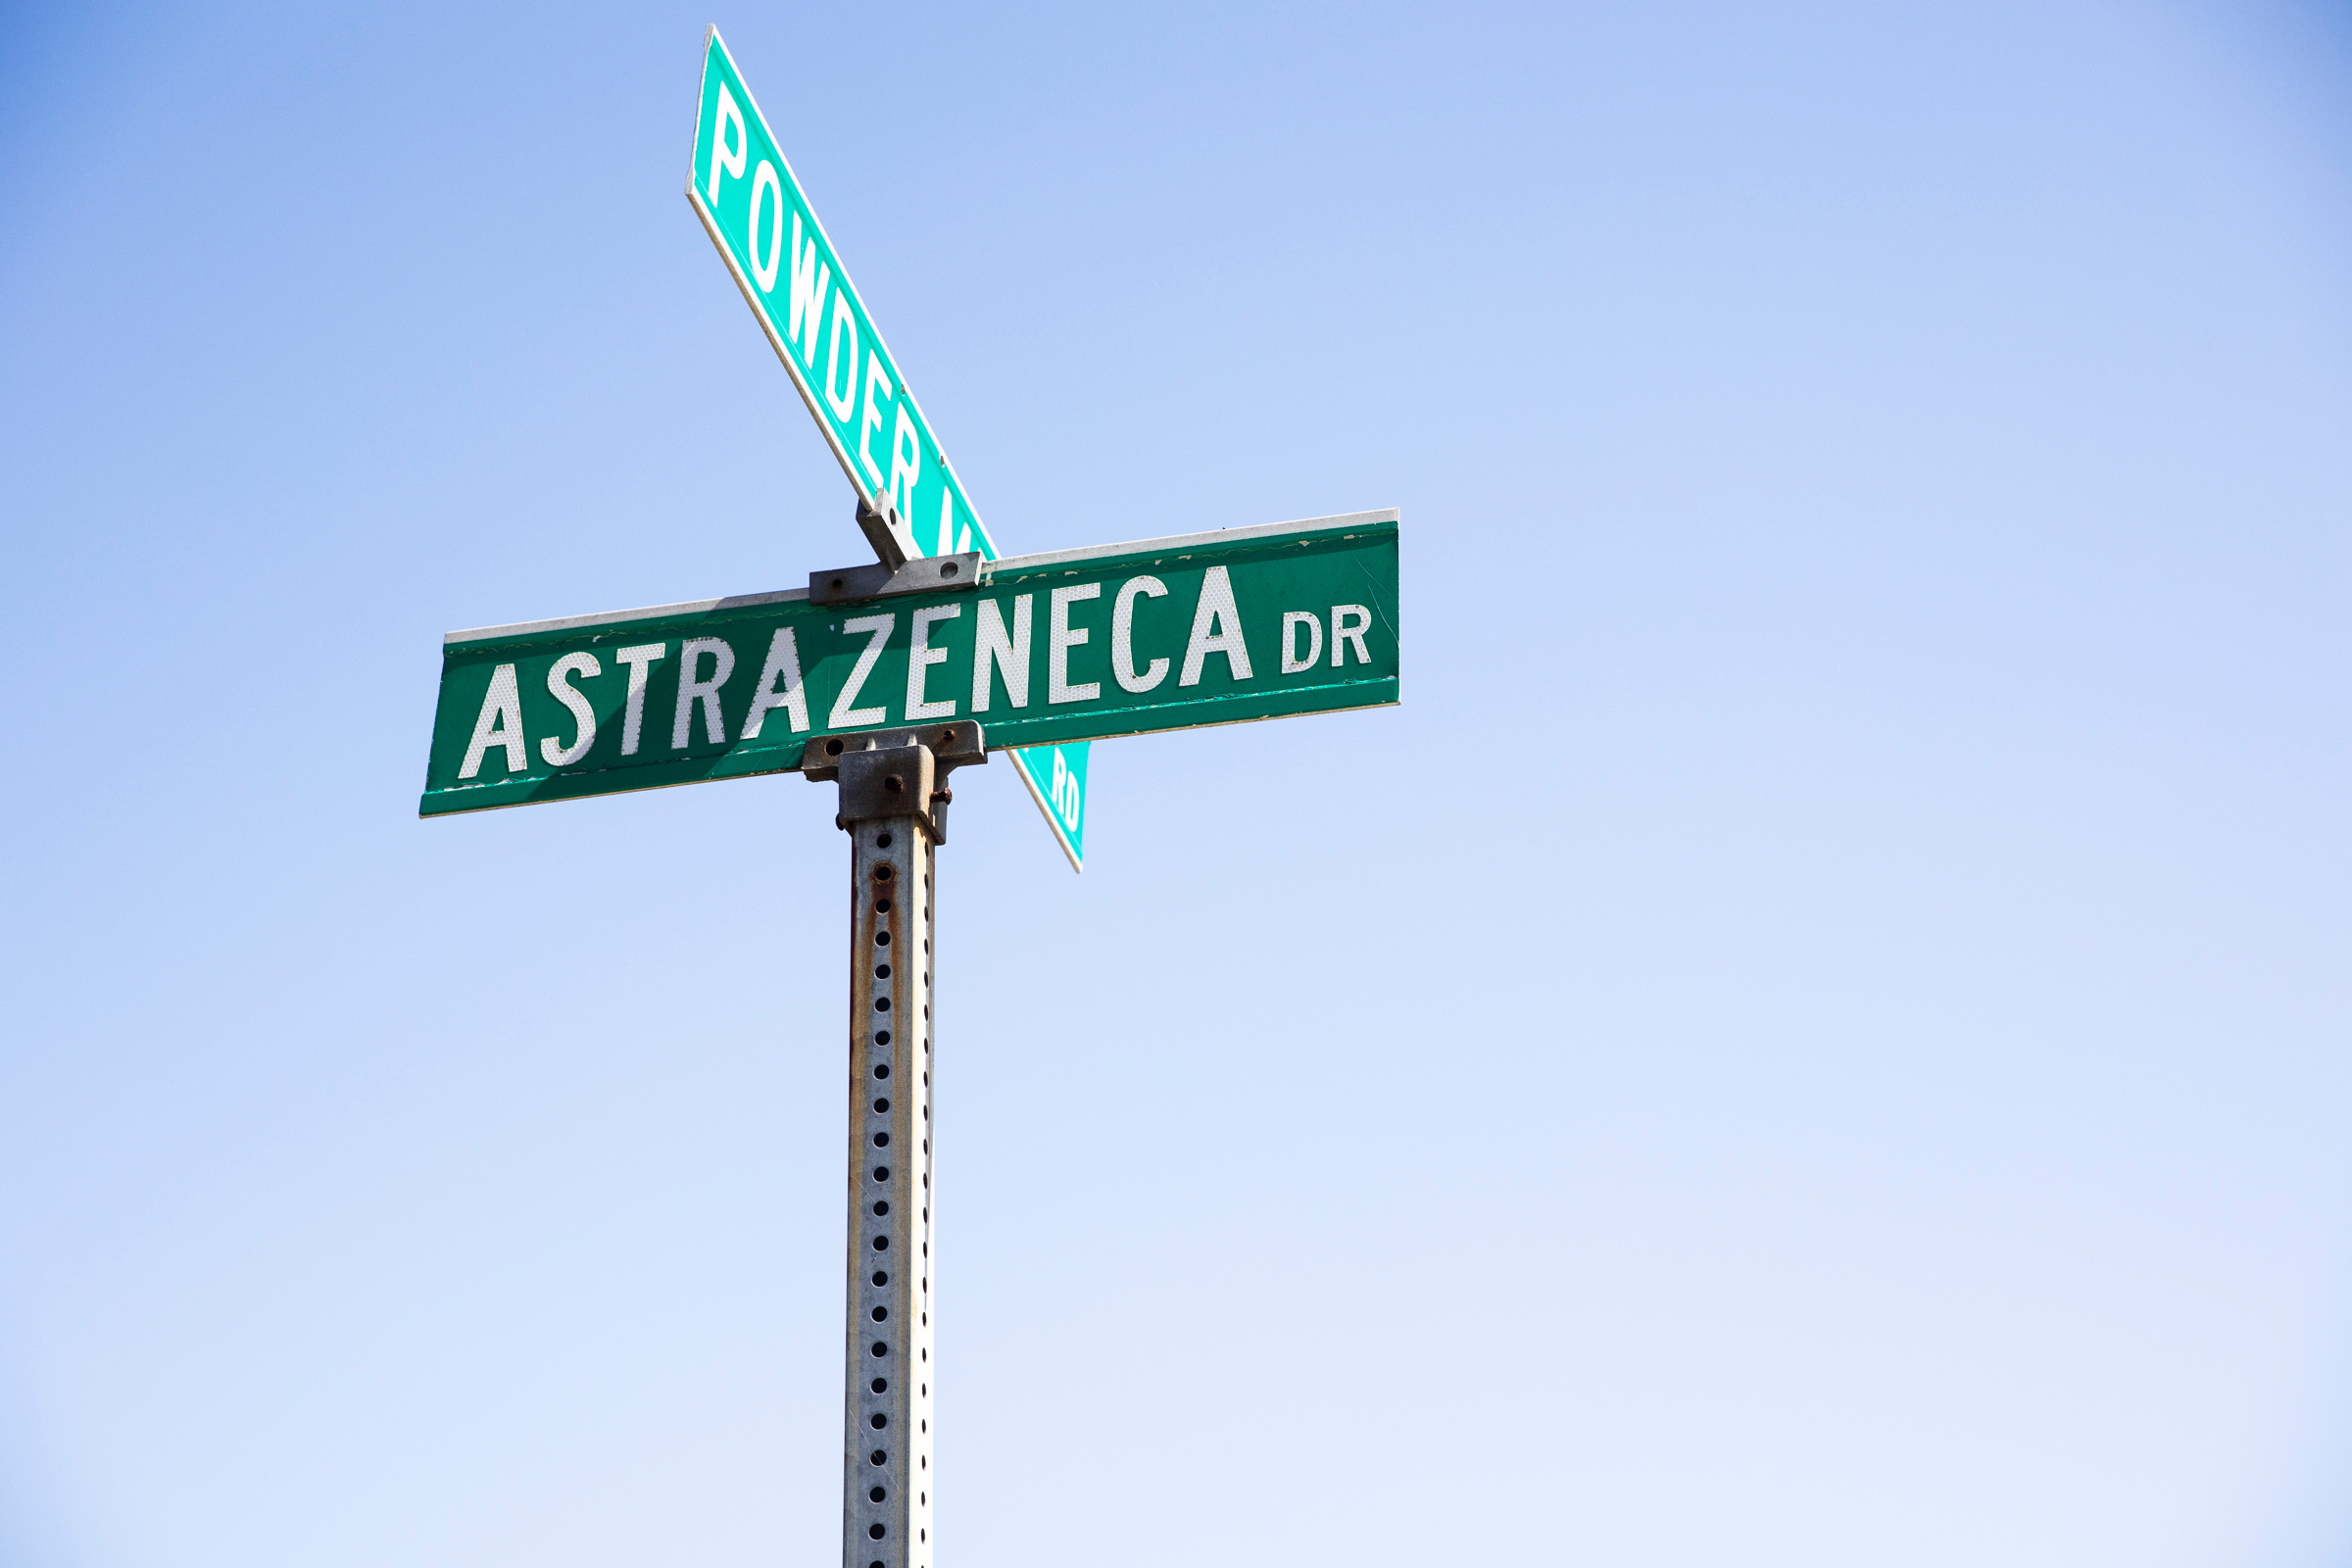 Un organismo sanitario de EEUU cuestiona el rigor de los datos del ensayo de AstraZeneca